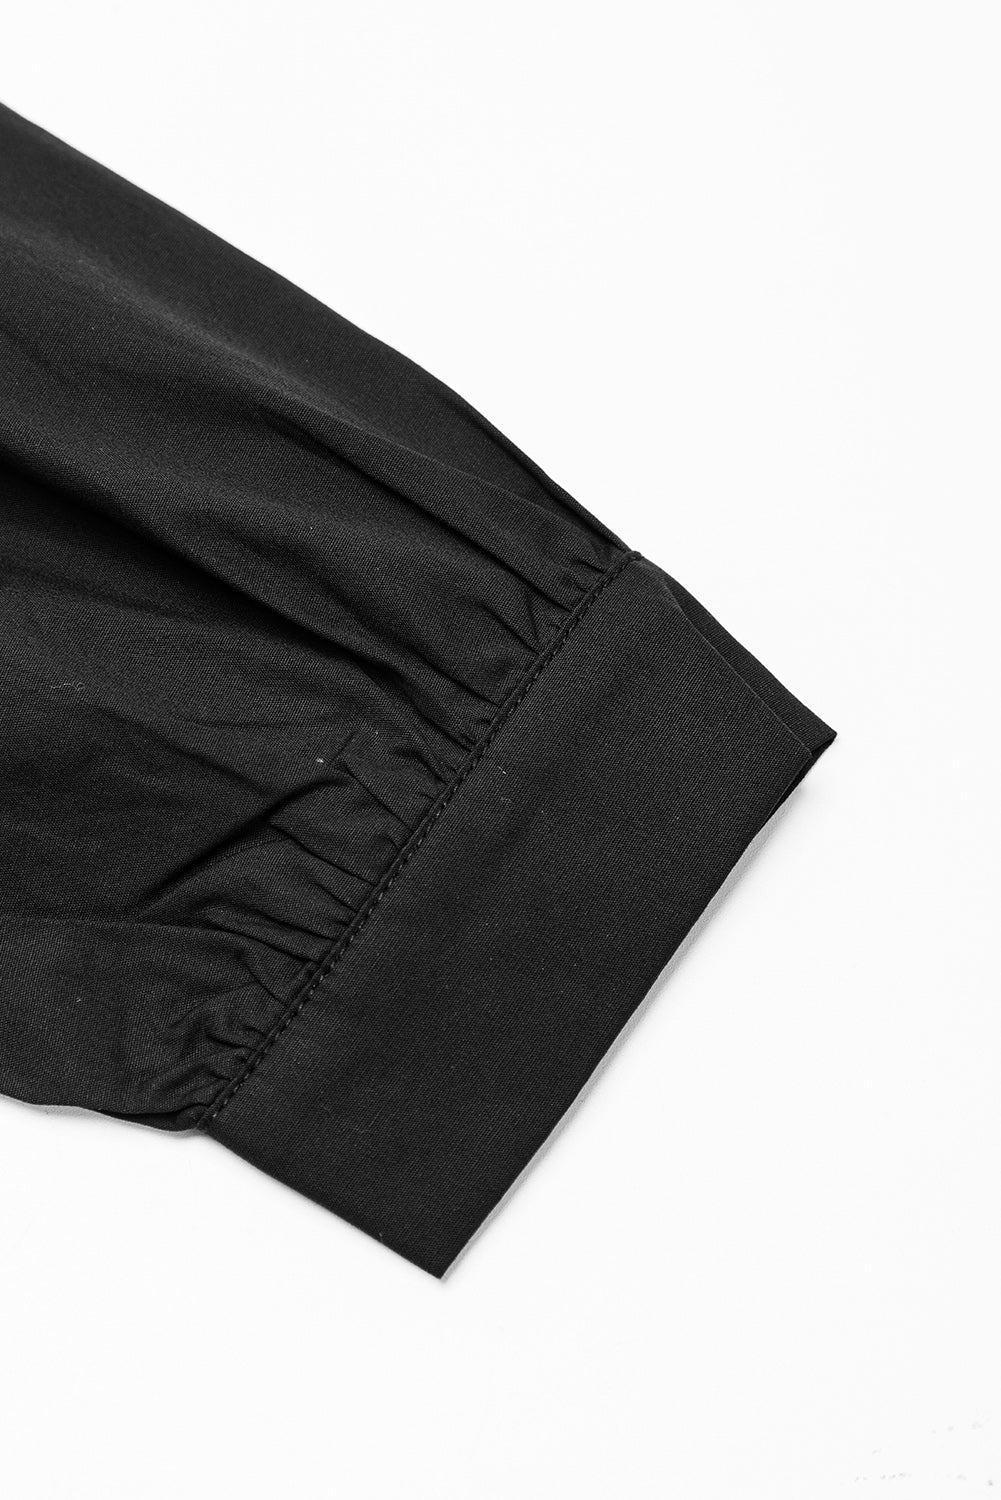 Schwarzes, gestuftes Rüschenkleid mit V-Ausschnitt und Taschen